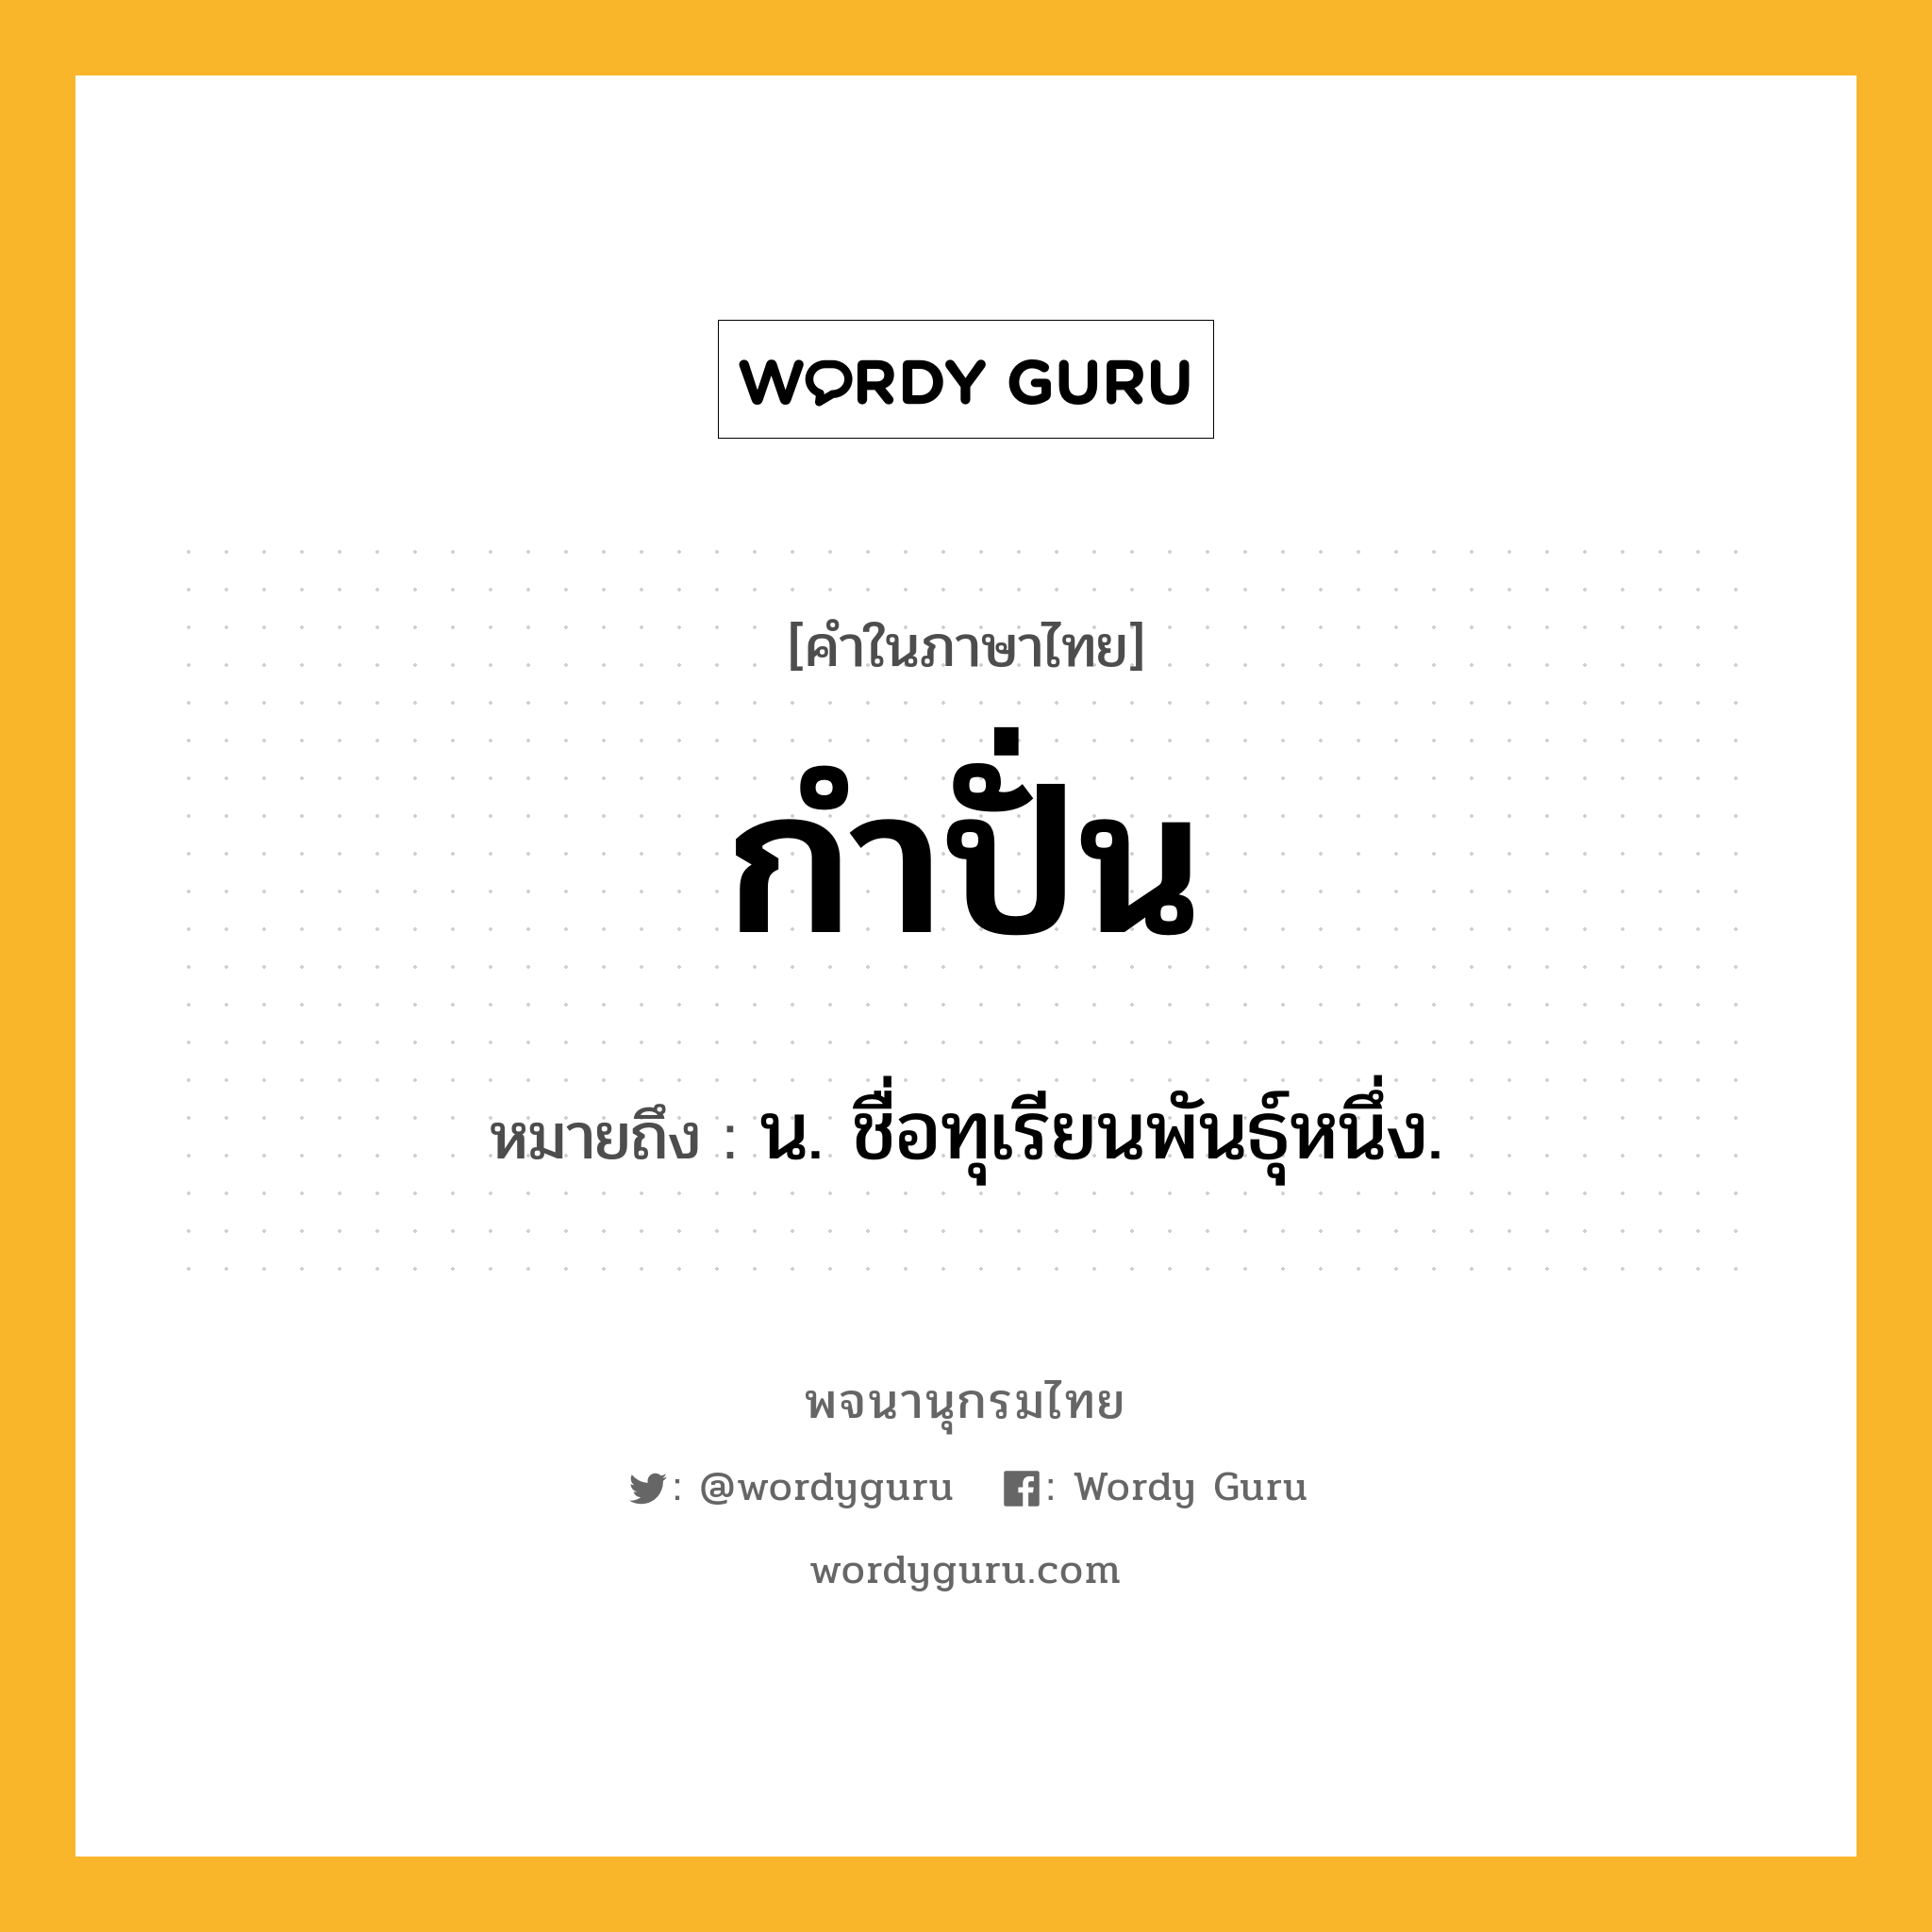 กำปั่น ความหมาย หมายถึงอะไร?, คำในภาษาไทย กำปั่น หมายถึง น. ชื่อทุเรียนพันธุ์หนึ่ง.